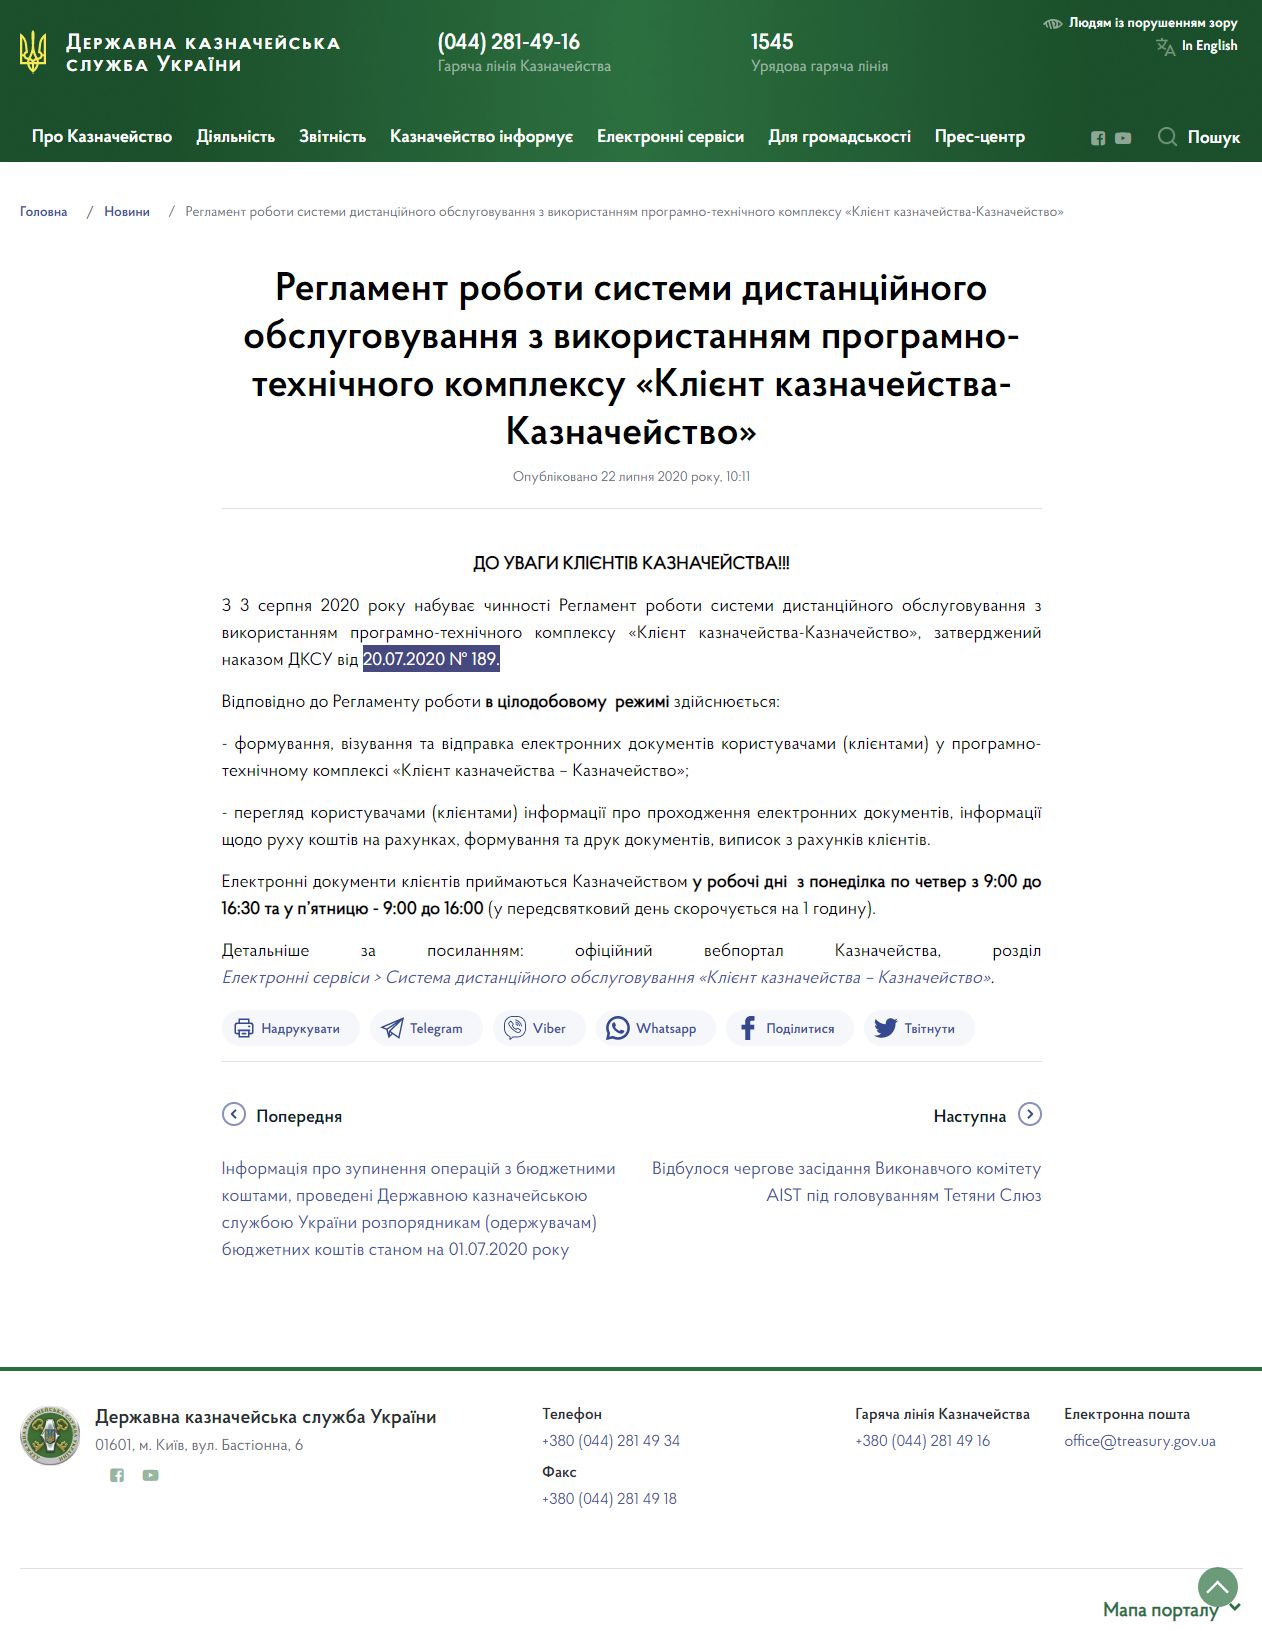 https://www.treasury.gov.ua/ua/news/reglament-roboti-sistemi-distancijnogo-obslugovuvannya-z-vikoristannyam-programno-tehnichnogo-kompleksu-kliyent-kaznachejstva-kaznachejstvo